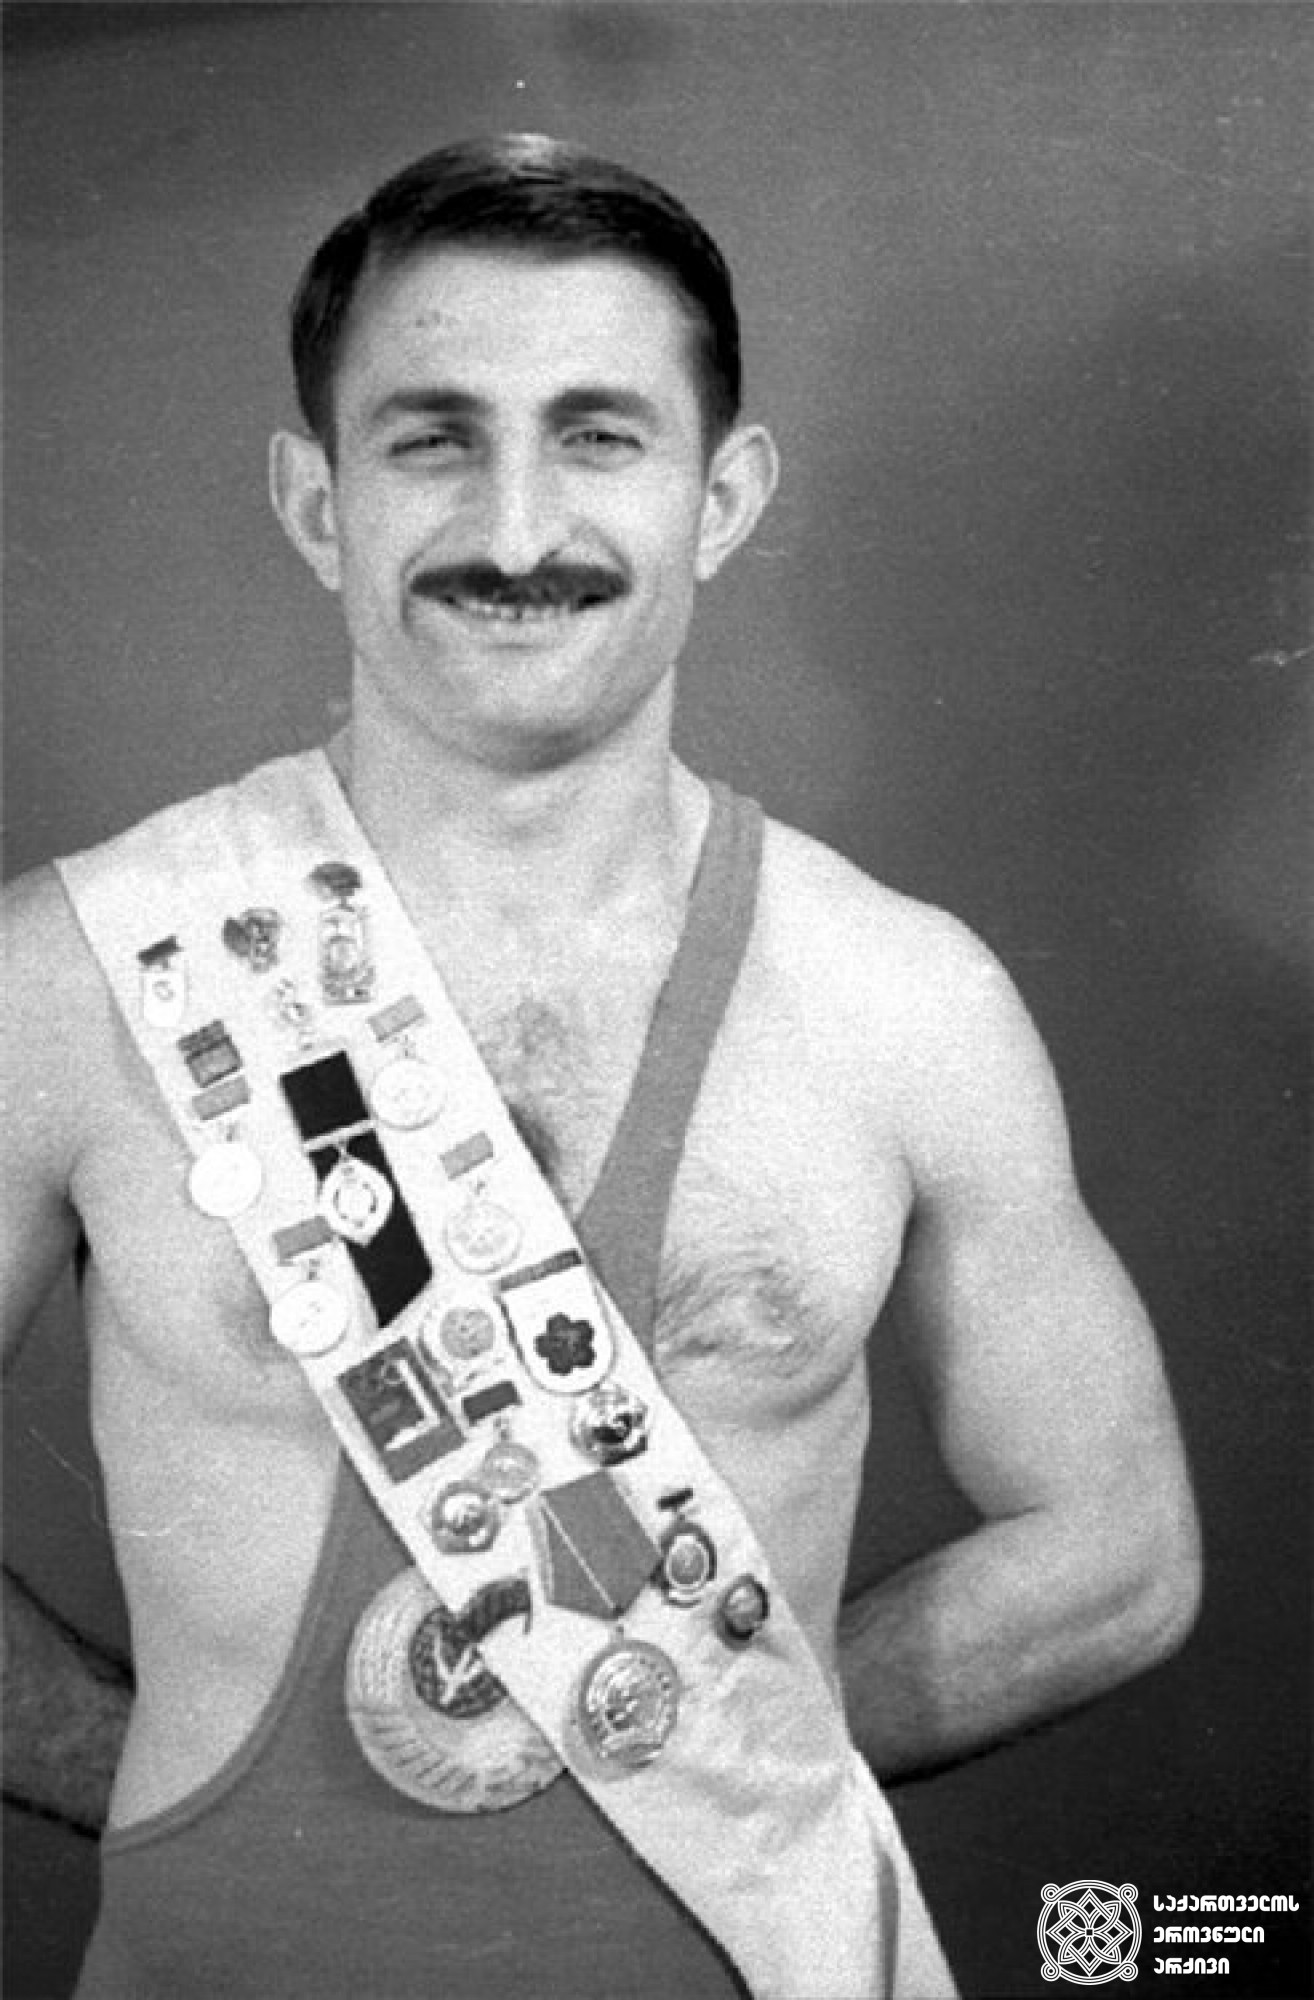 ვახტანგ ბალავაძე. <br>
XVI ოლიმპიური თამაშების მესამე პრიზიორი თავისუფალ ჭიდაობაში (1956 წელი, მელბურნი). 
Vakhtang Balavadze. <br>
Third-prize winner of the XVI Olympic Games in Wrestling Freestyle (1956, Melbourne).